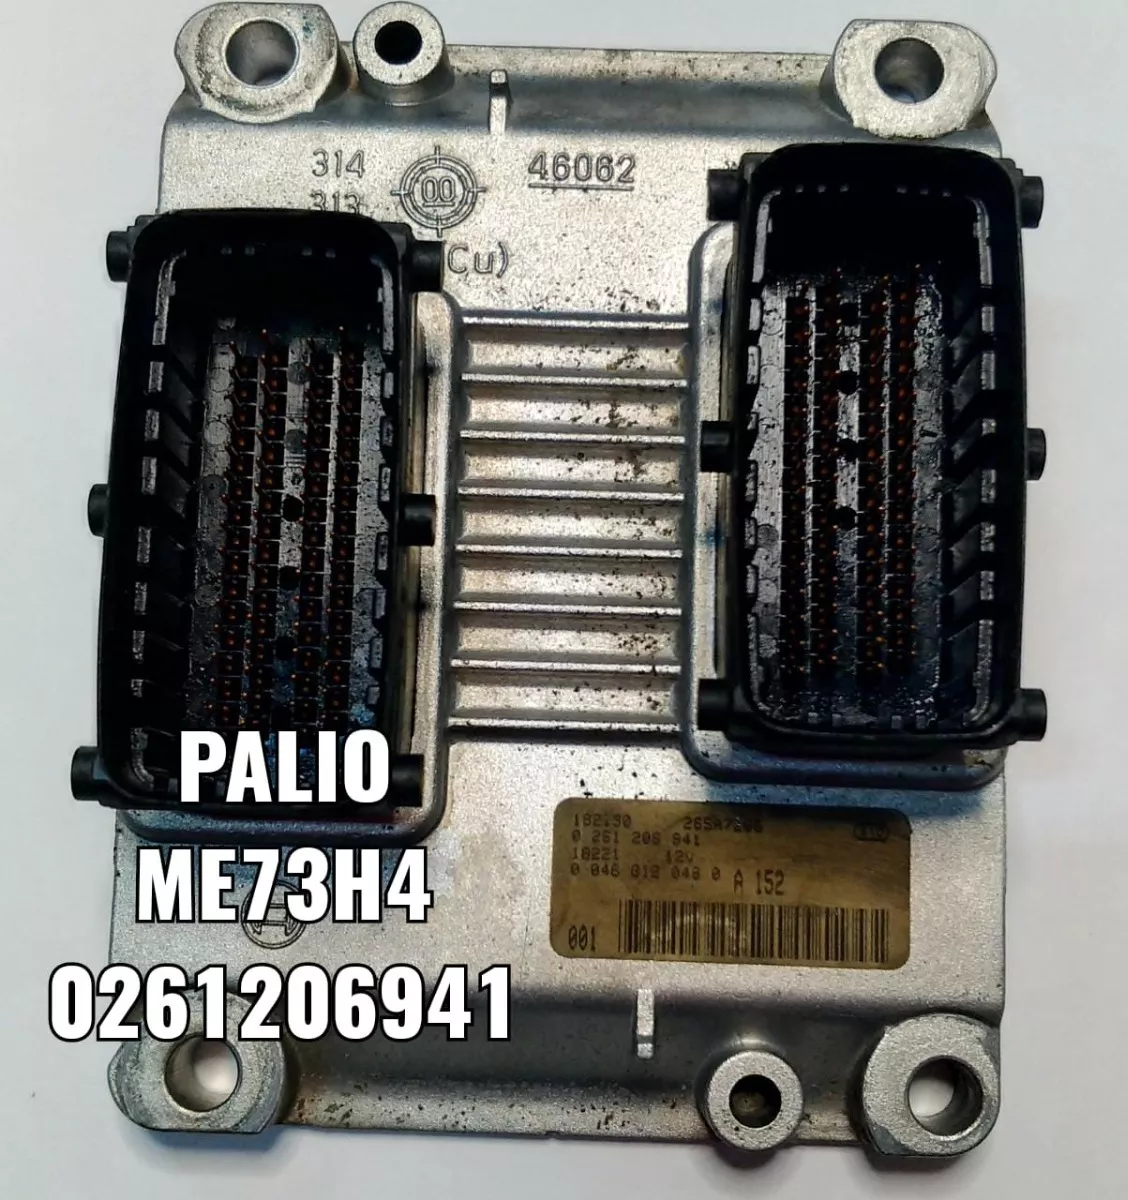 Modulo Injeção Palio 1.3 16v  Bosch 0261206941 Descodificado